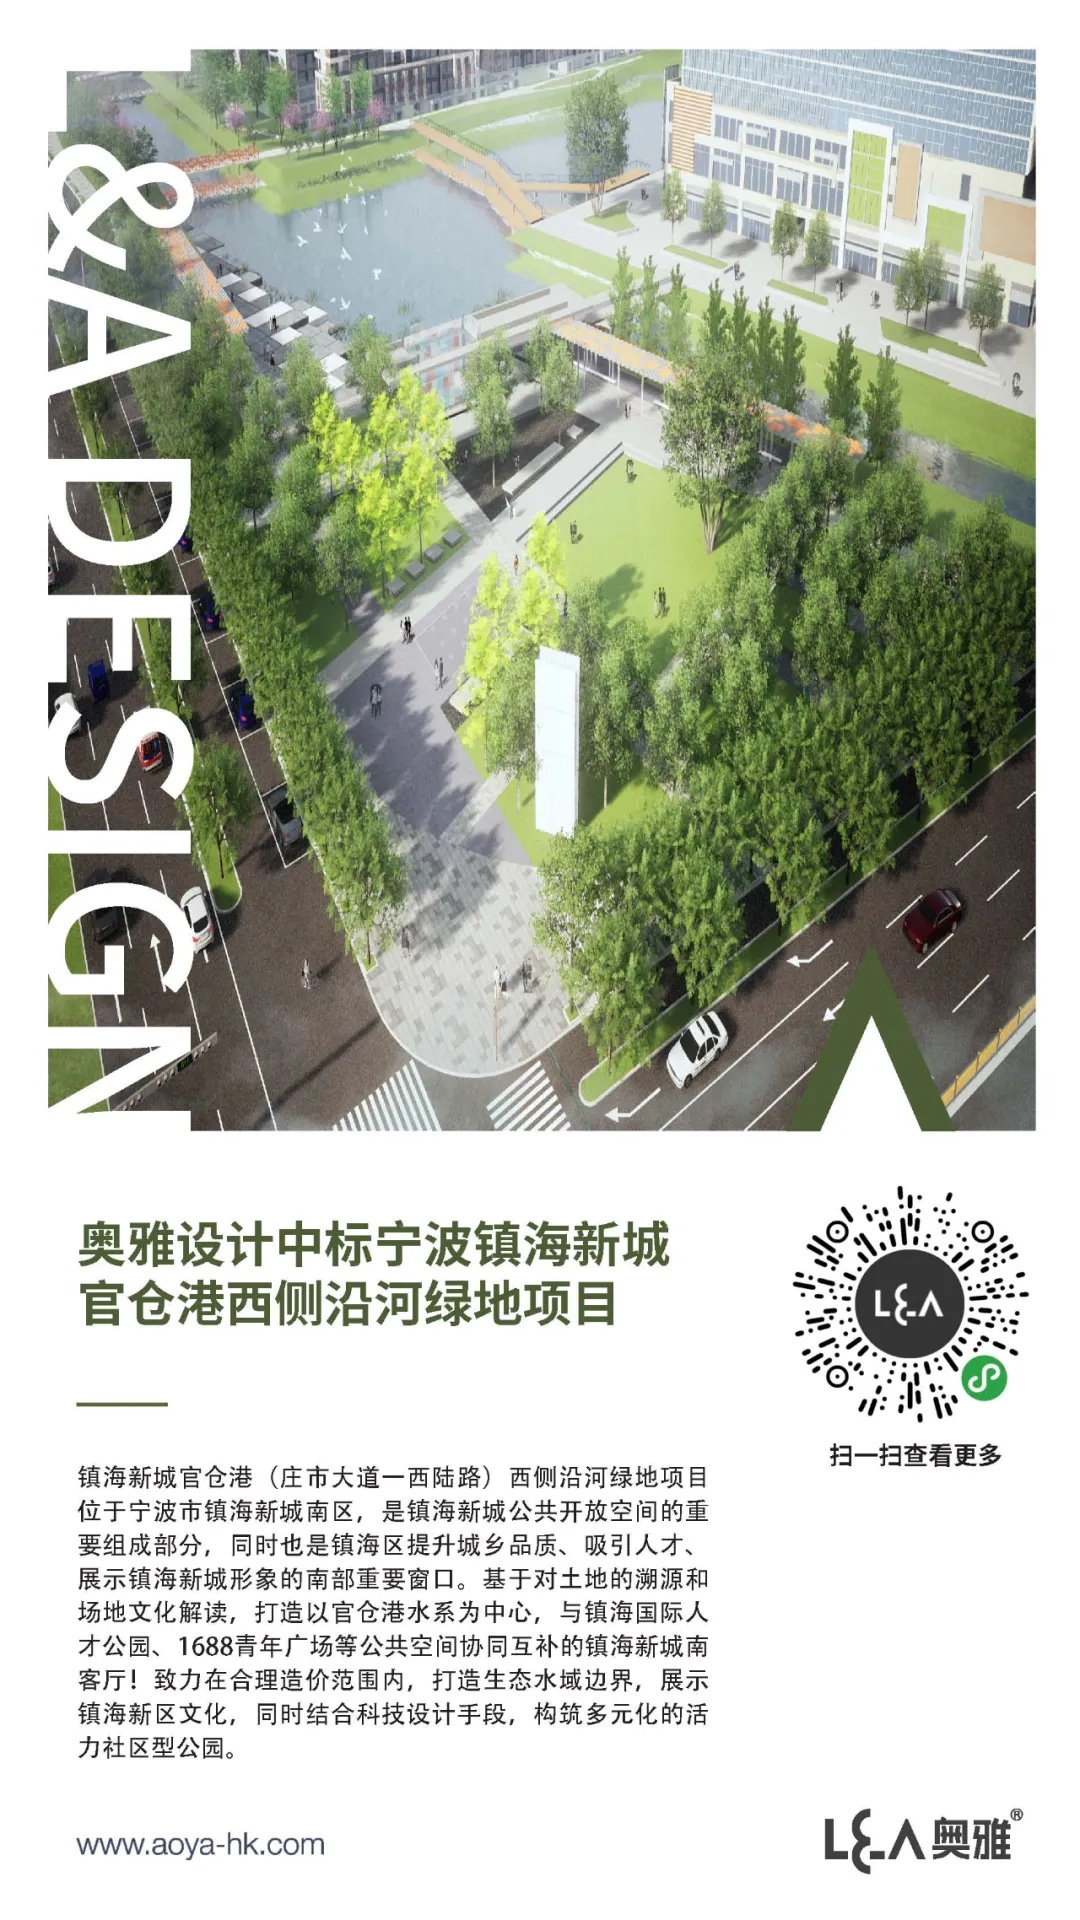 奥雅设计中标宁波镇海新城官仓港西侧沿河绿地项目 | 喜讯